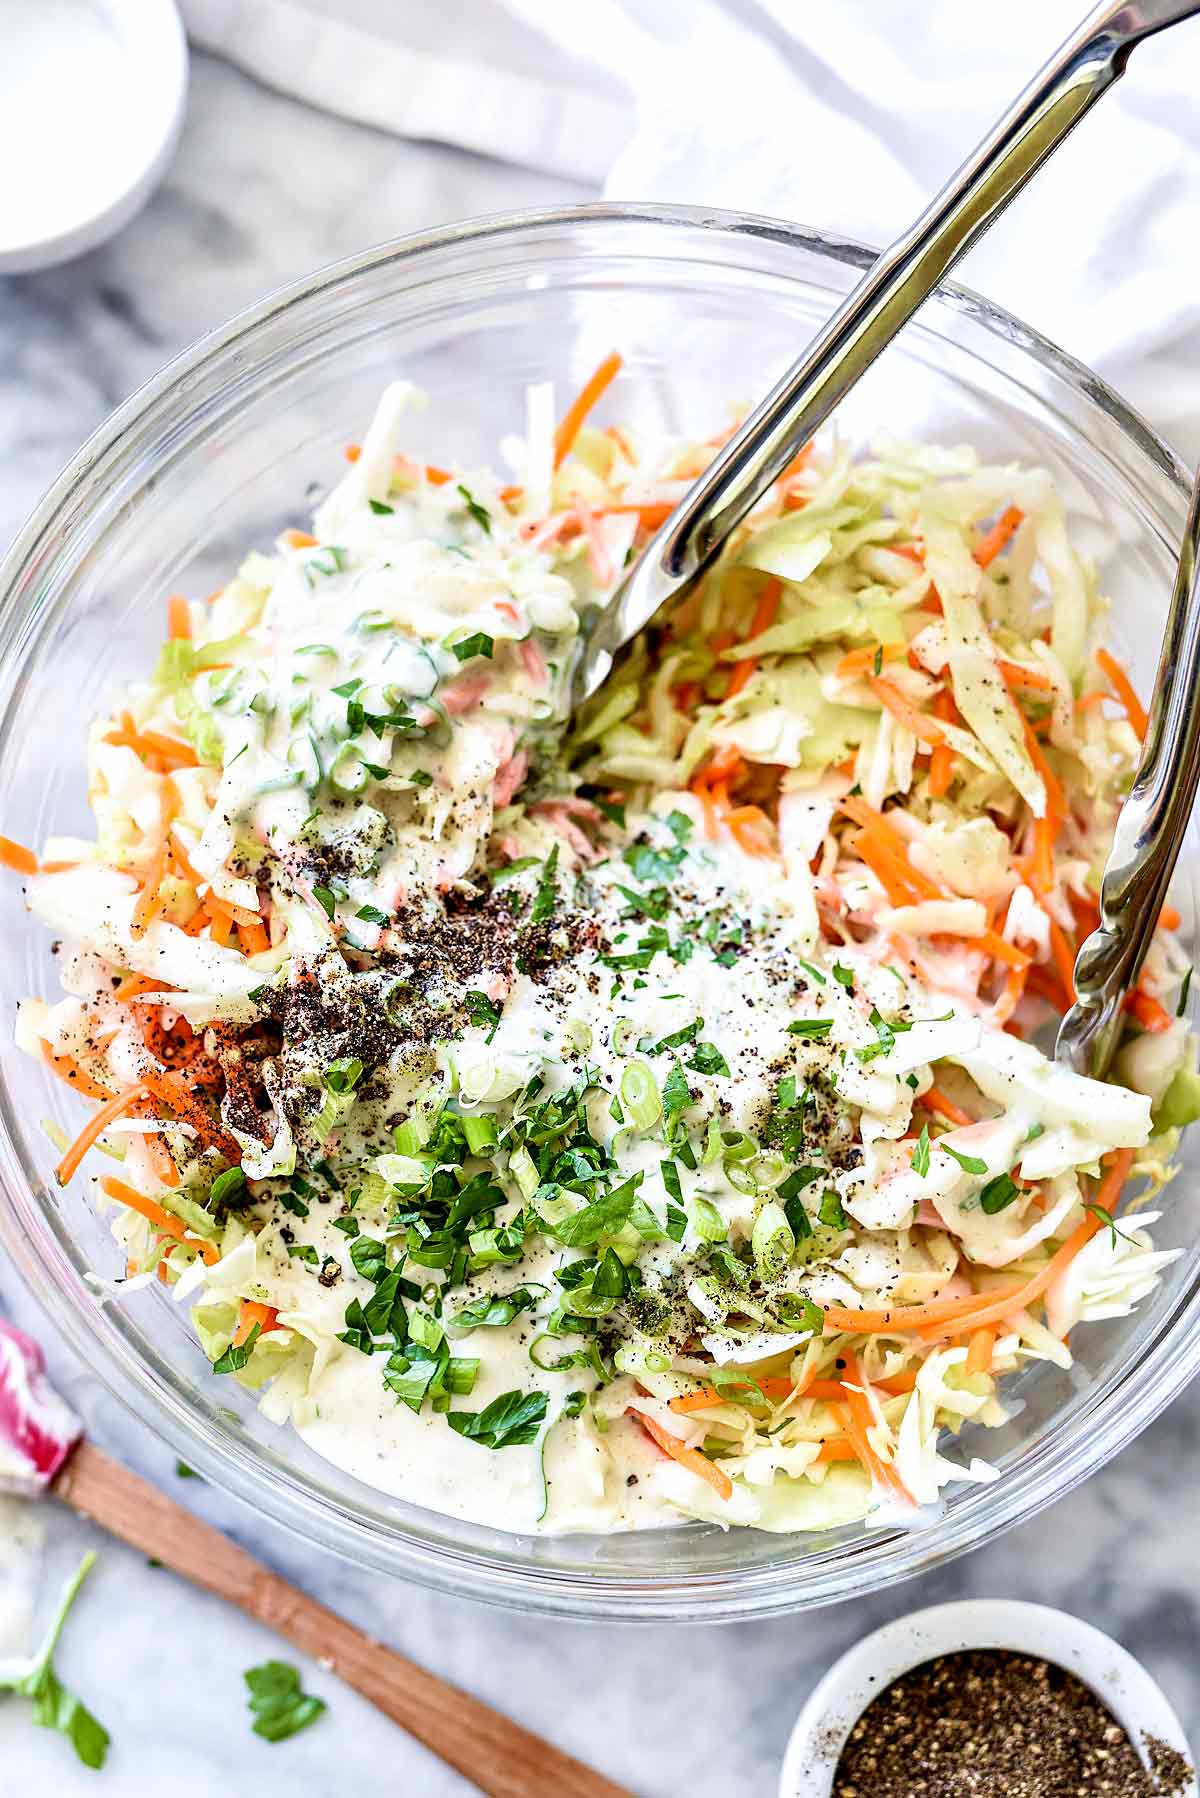 Vinaigrette pour salade de chou | foodiecrush.com #vinaigrette #coleslaw #salade #recipes